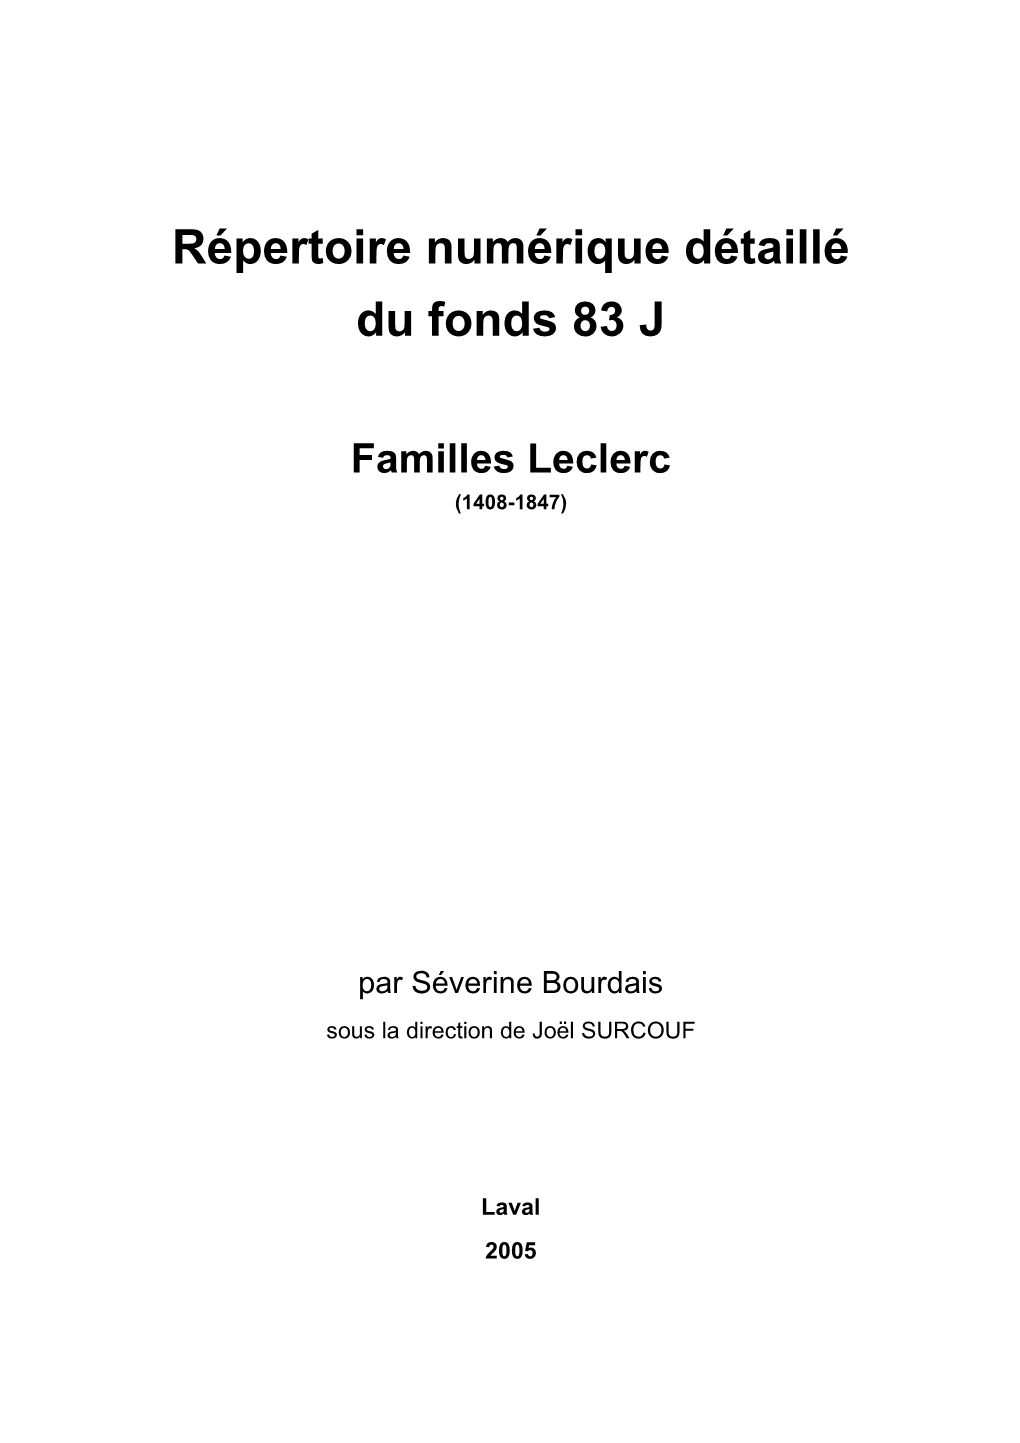 Famille Leclerc De Monternault Seigneurie De La Helberdière En